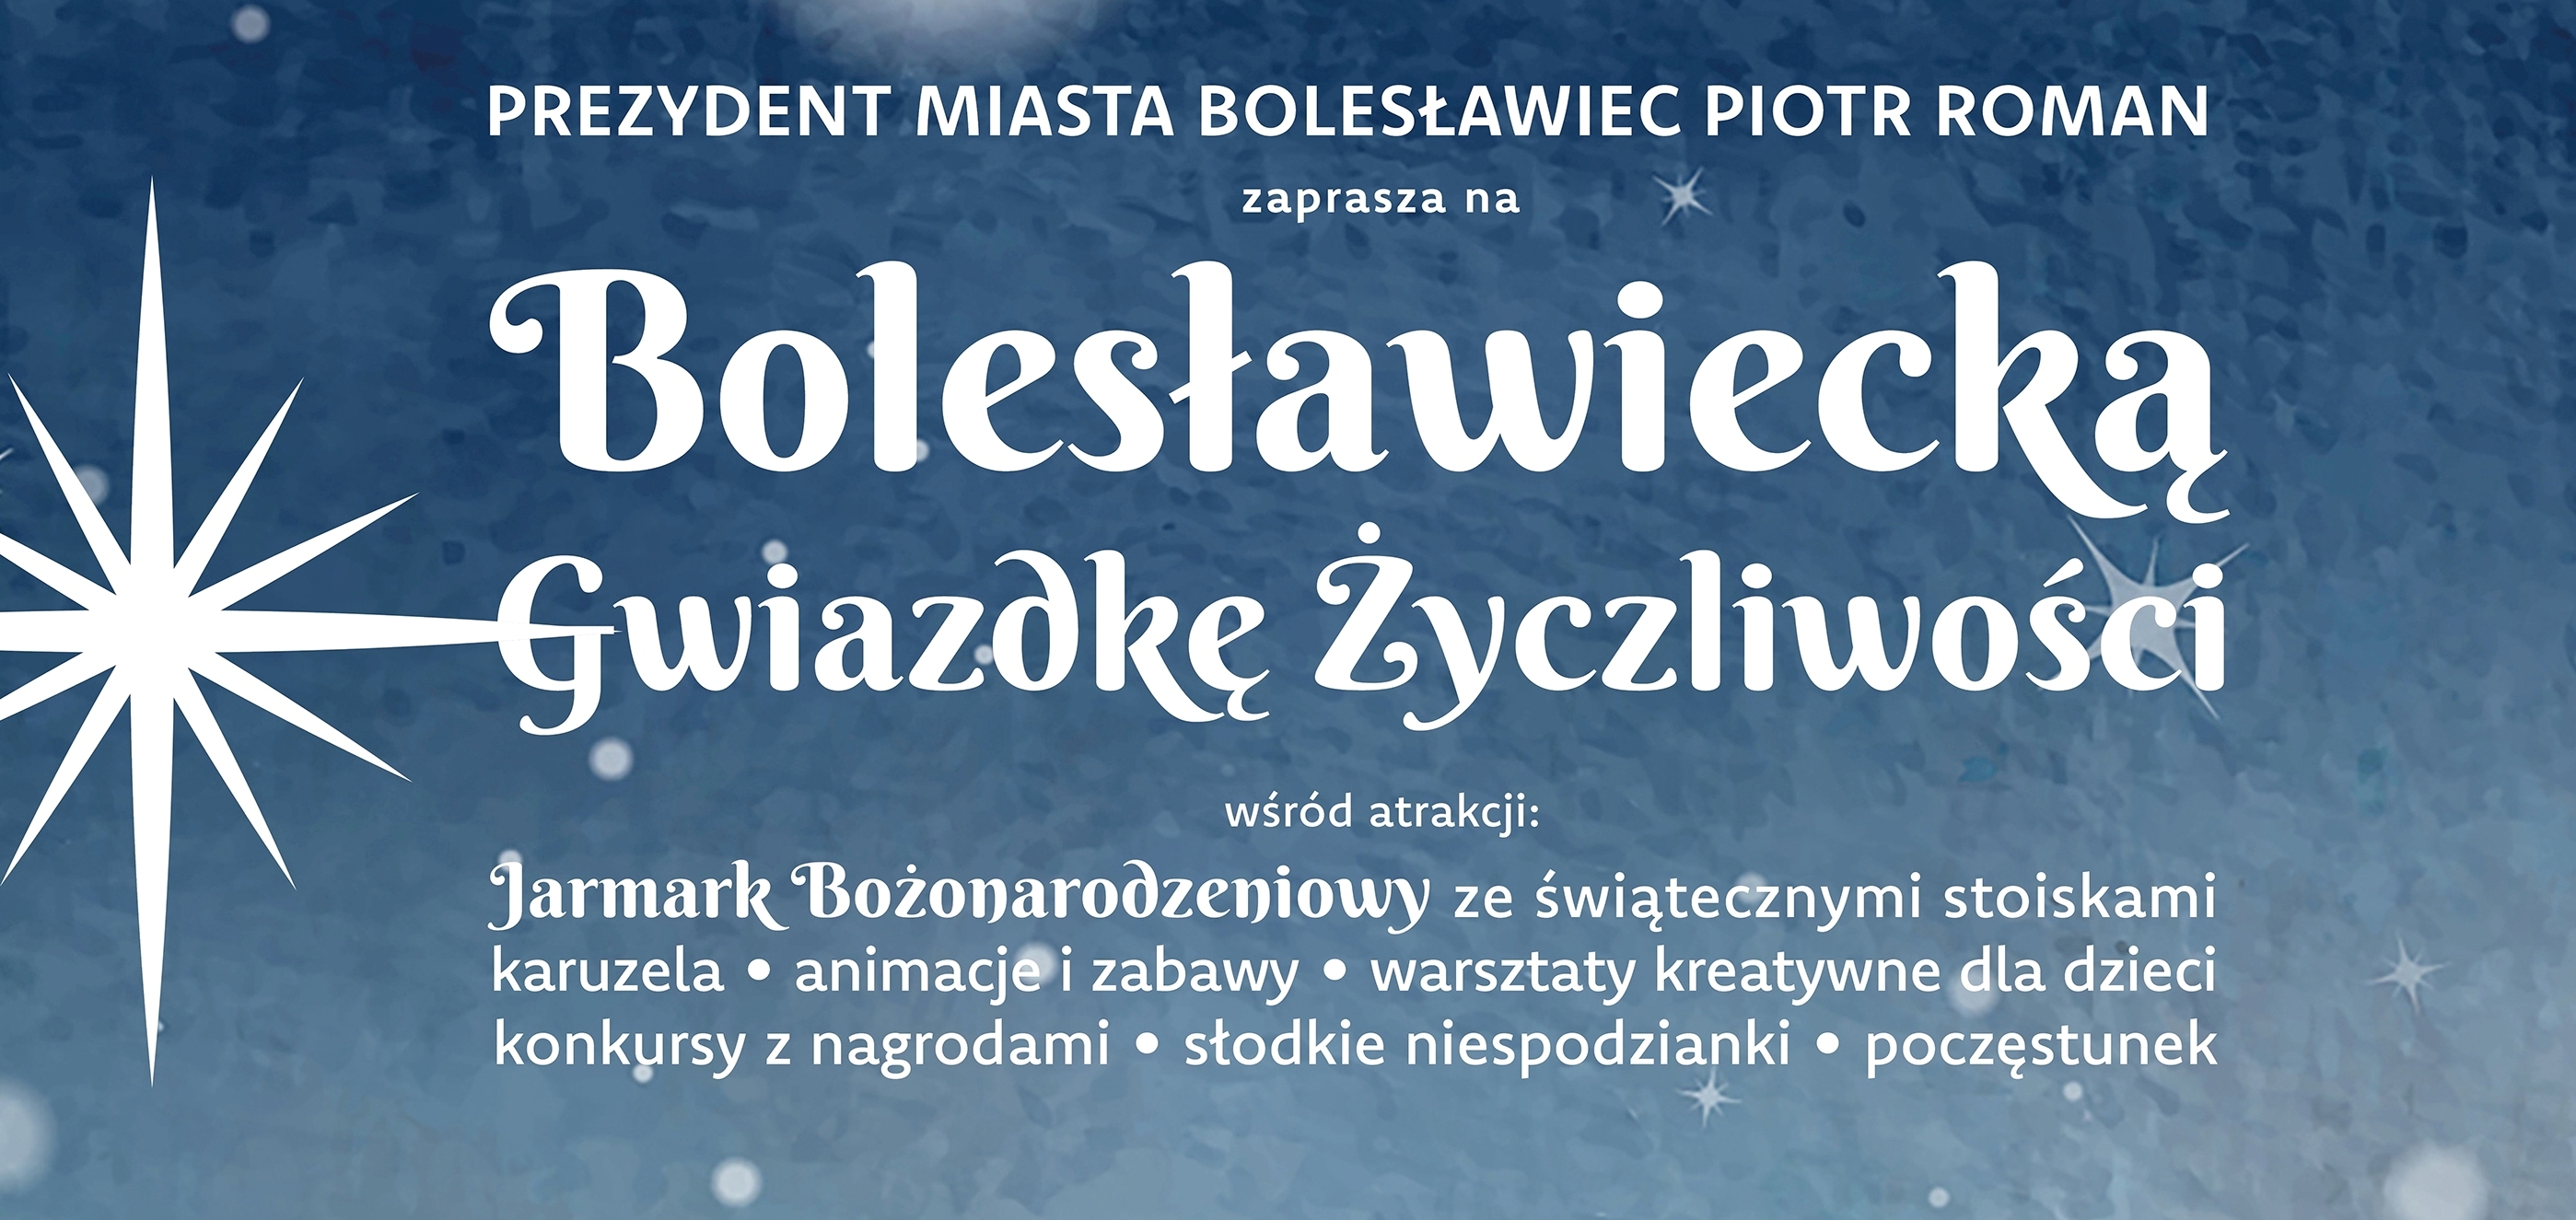 Prezydent Miasta Bolesławiec zaprasza na Bolesławiecką Gwiazdkę Życzliwości...